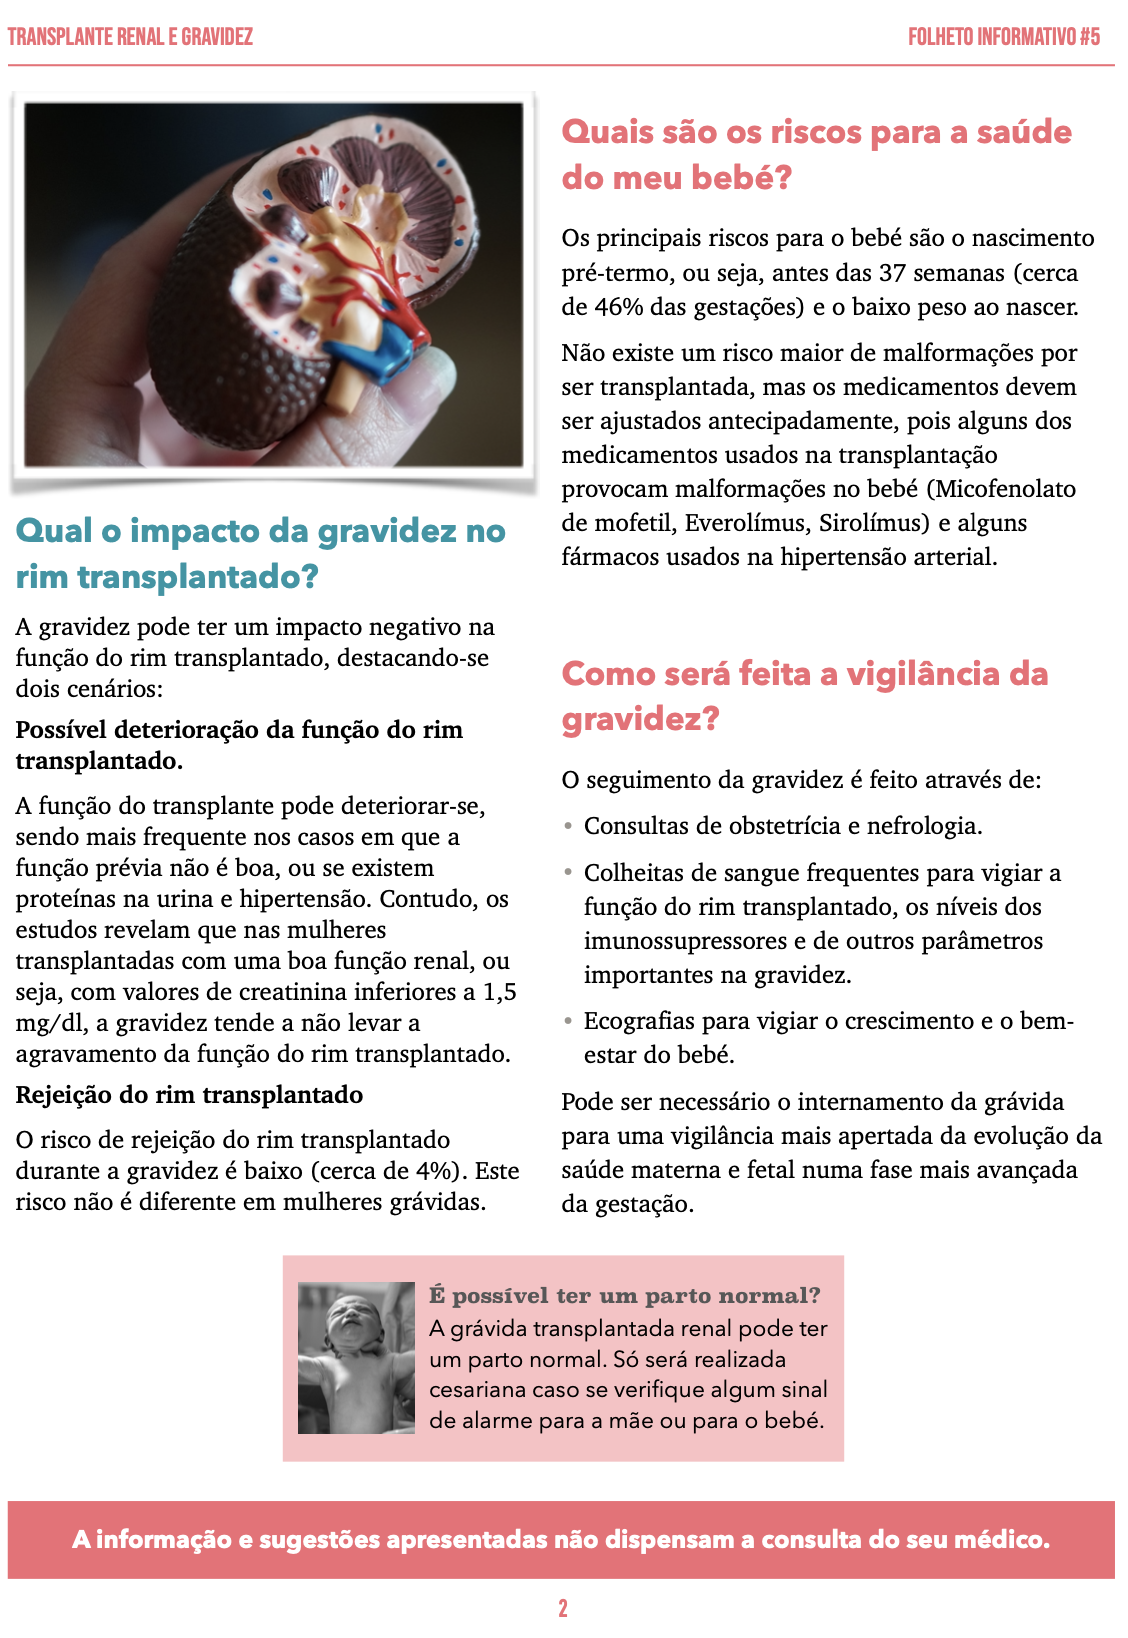 Folheto Informativo 5 - Transplante renal e gravidez_p2.png